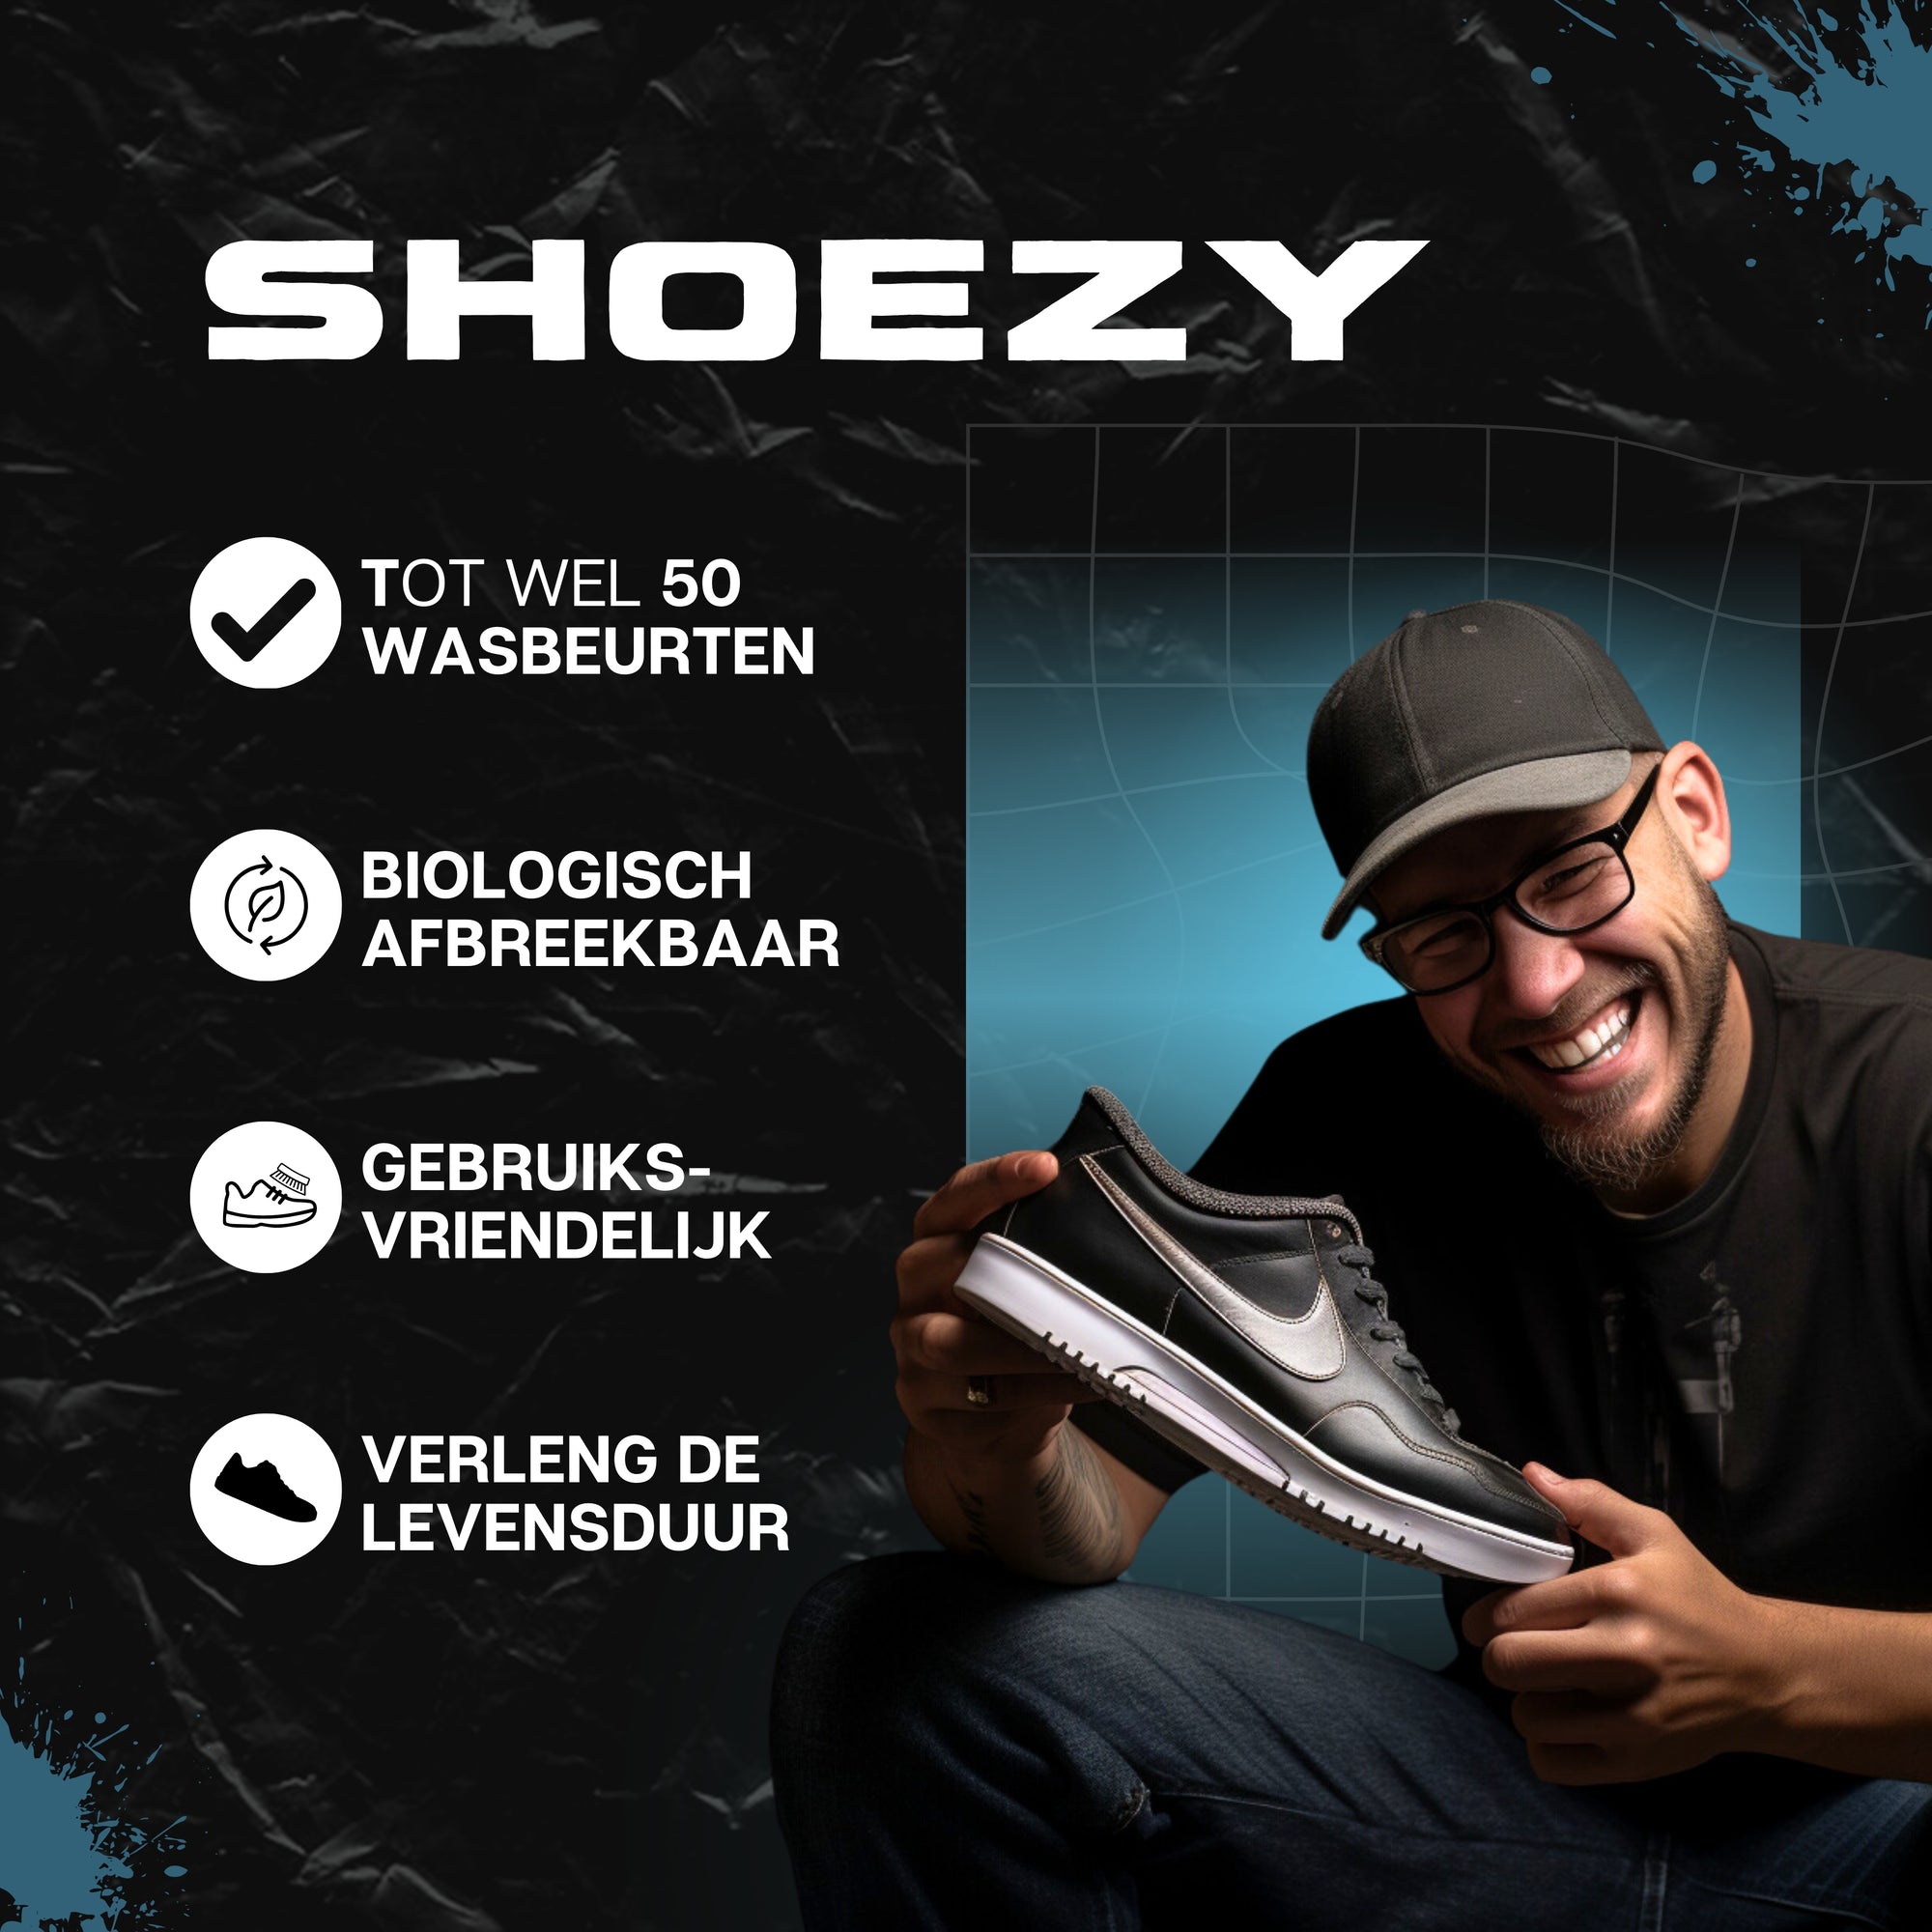 Shoezy | Sneaker Beschermer